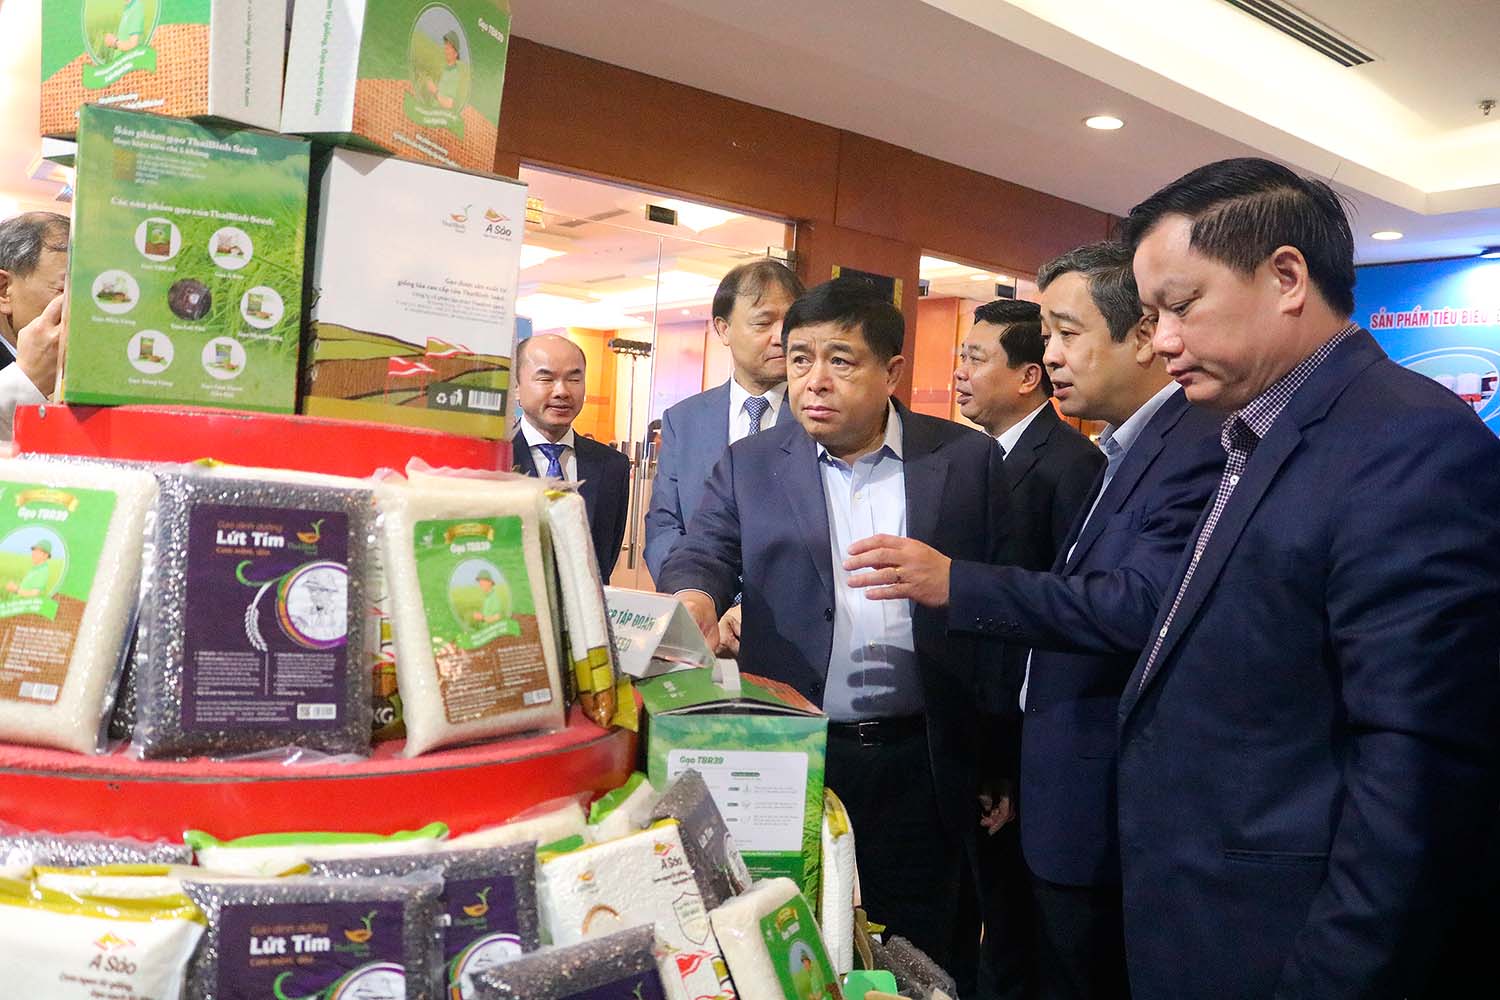 Bộ Trưởng Bộ Kế hoạch và Đầu tư Nguyễn Chí Dũng cùng lãnh đạo Bộ Công Thương, lãnh đạo tỉnh Thái Bình thăm quan các sản phẩm nông nghiệp tiêu biểu của tỉnh Thái Bình